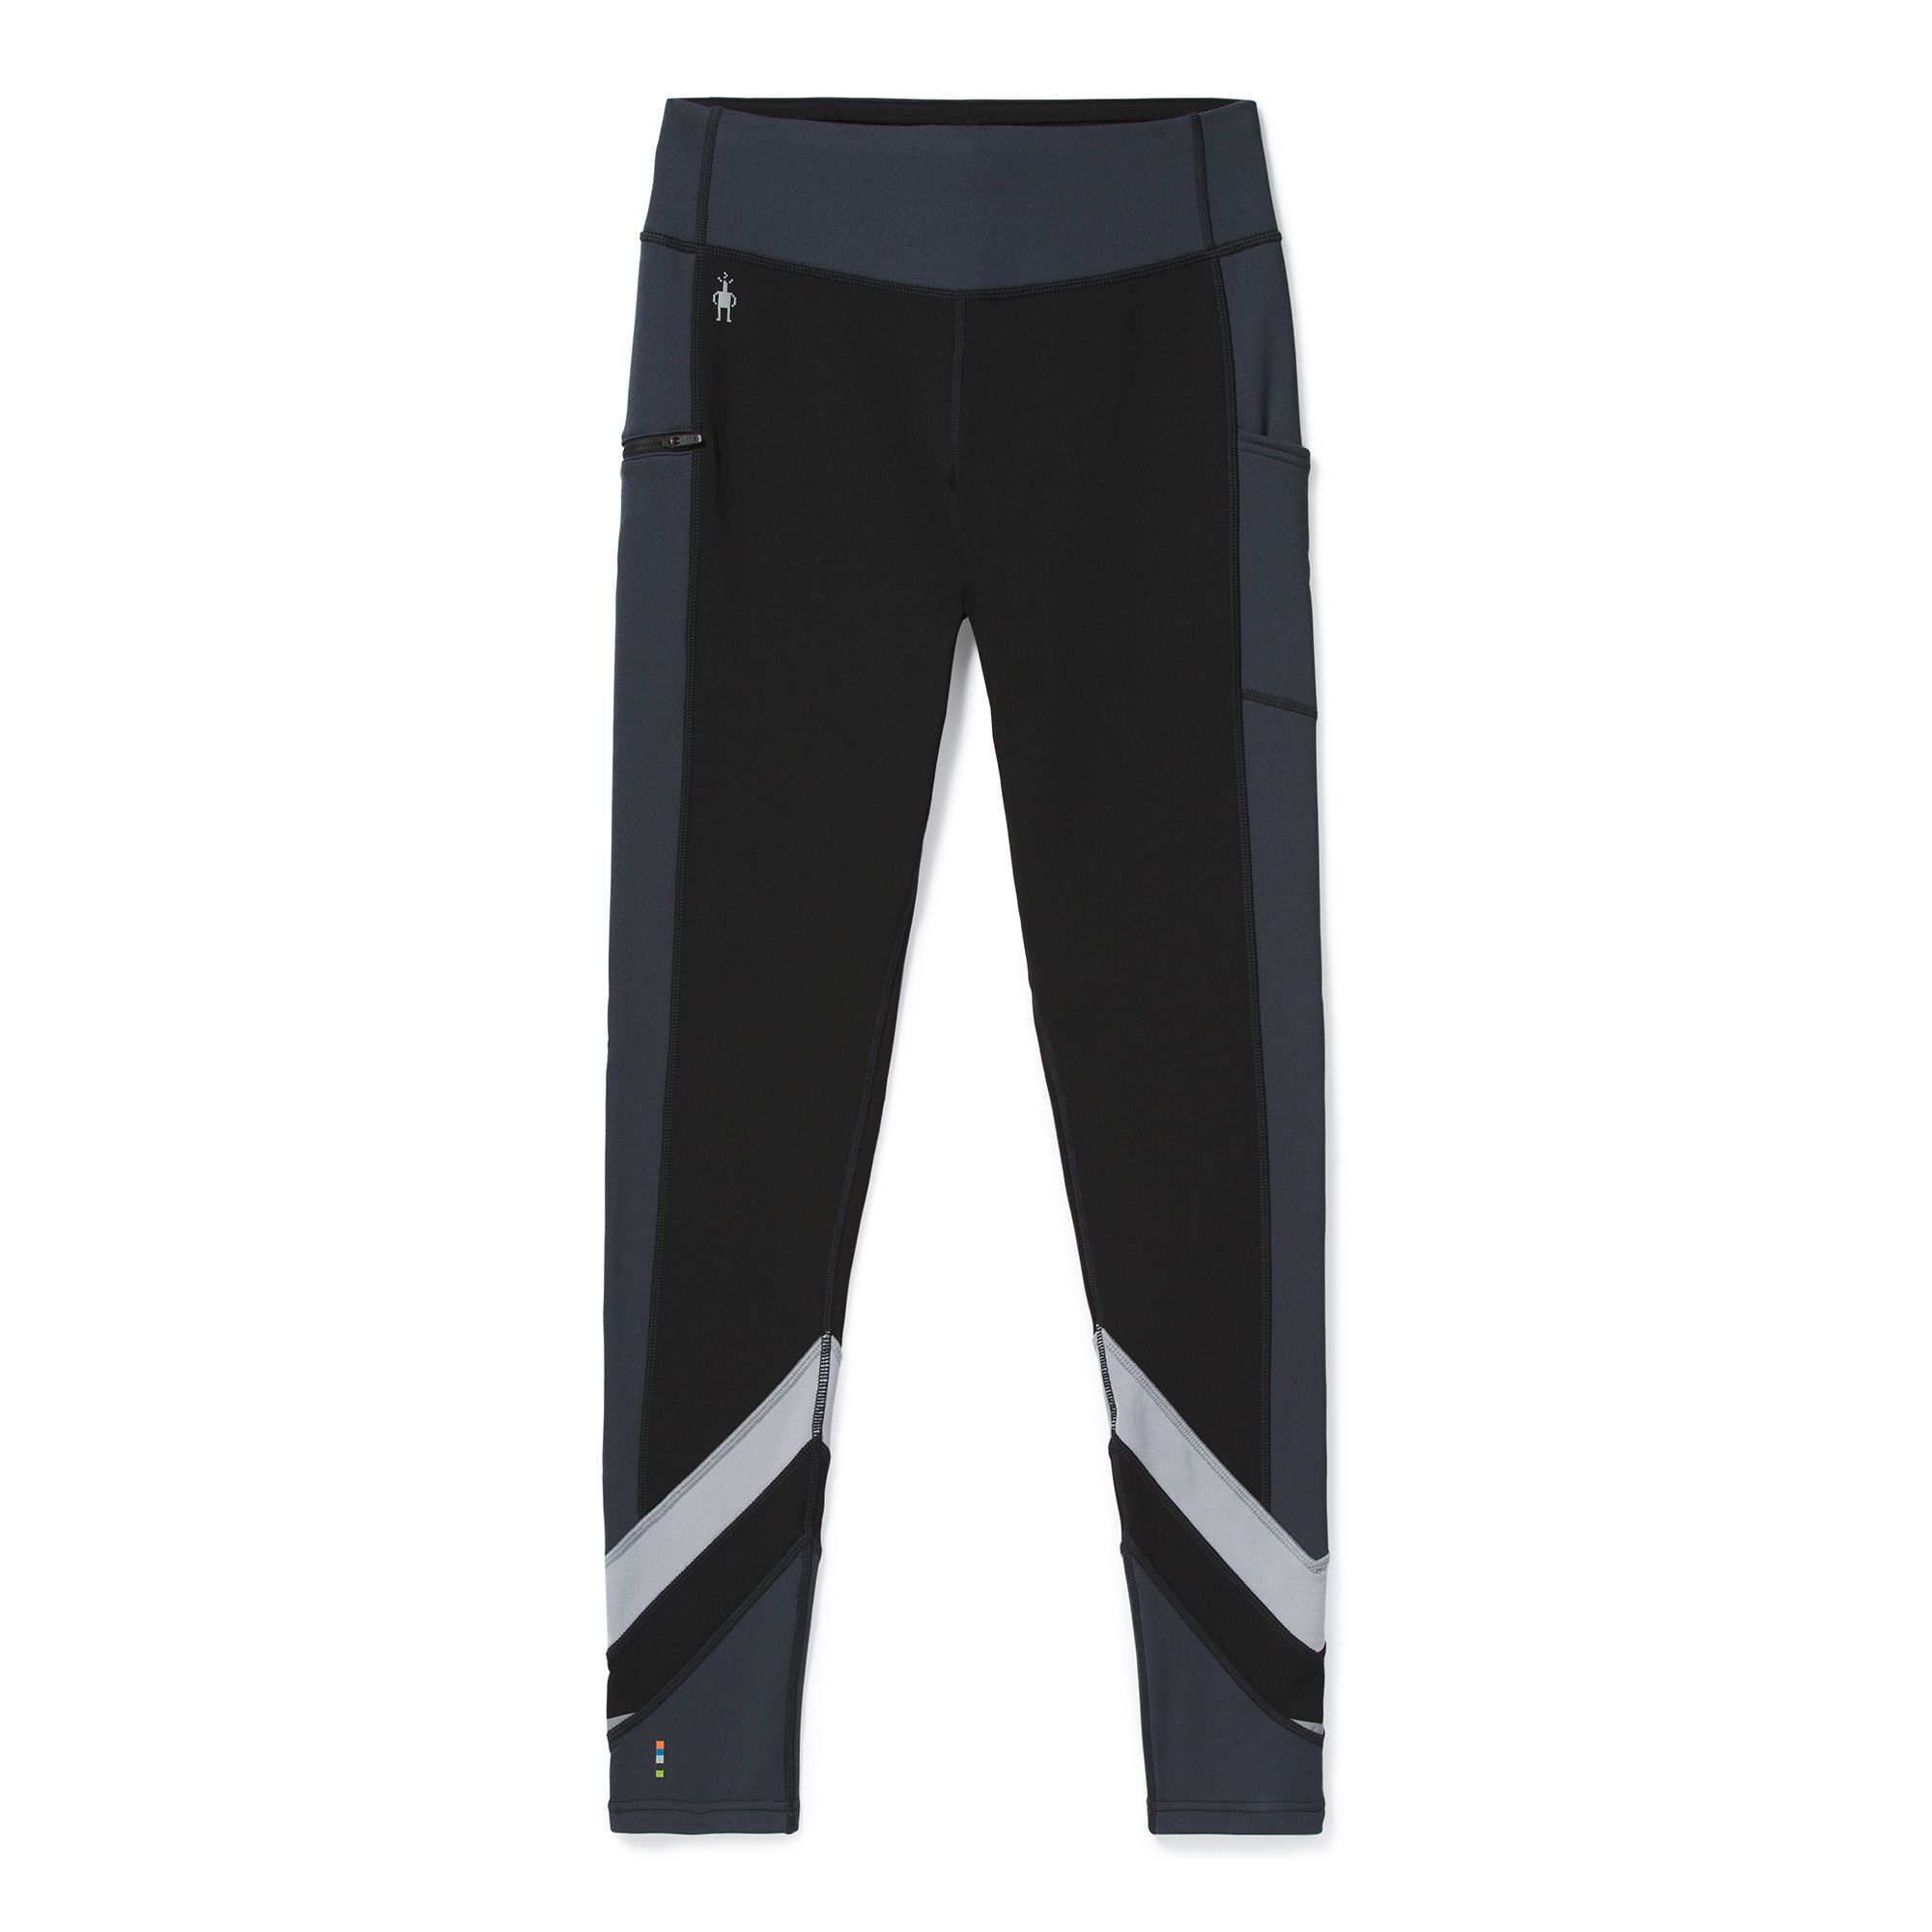 Smartwool Men's Merino Sport Fleece Pant - Soccer Sport Fitness